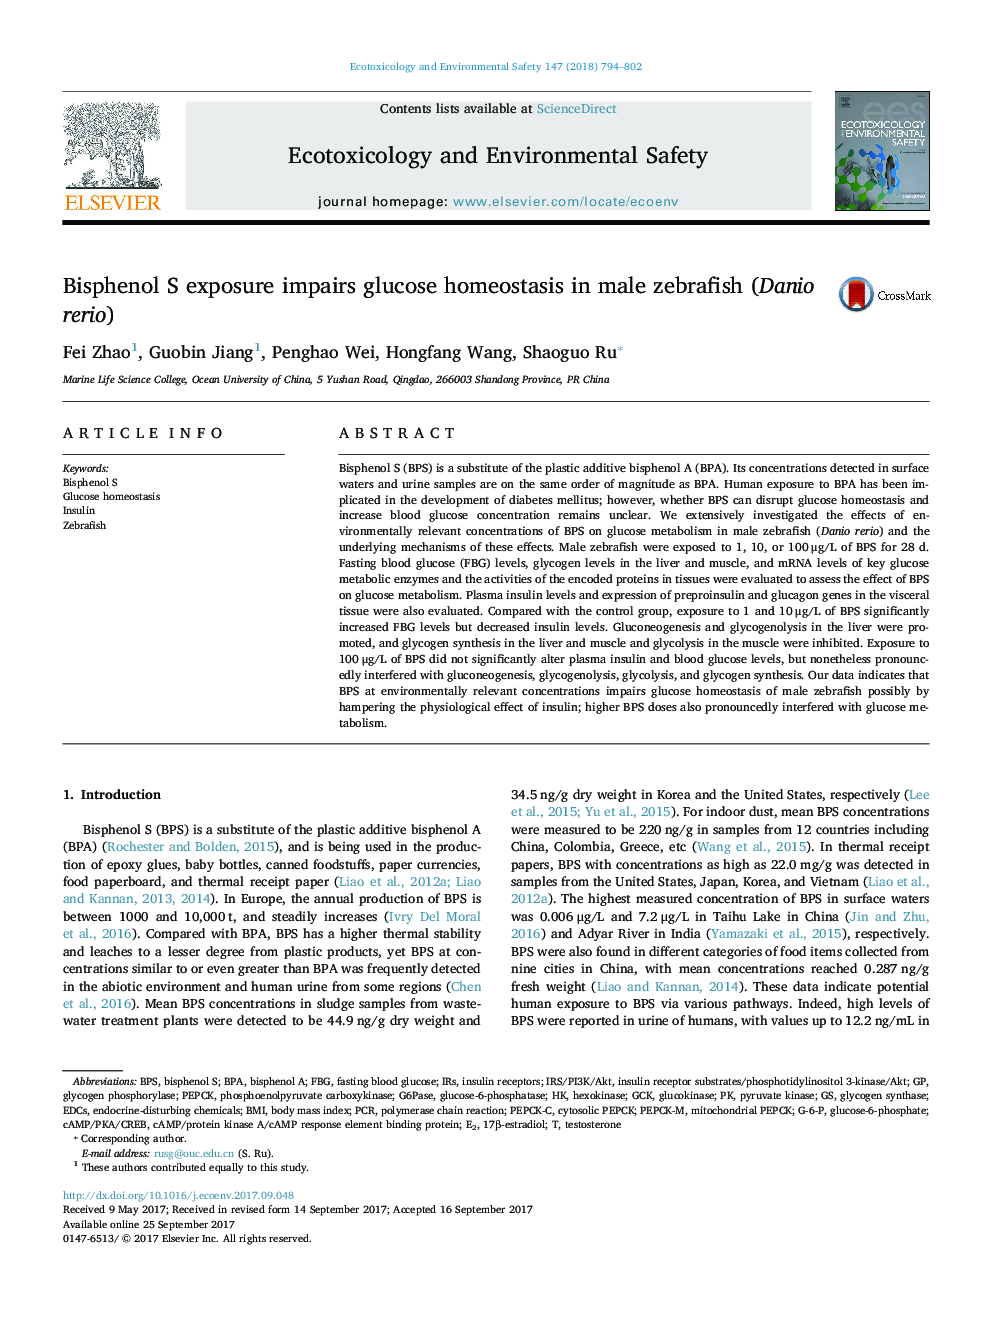 Bisphenol S exposure impairs glucose homeostasis in male zebrafish (Danio rerio)